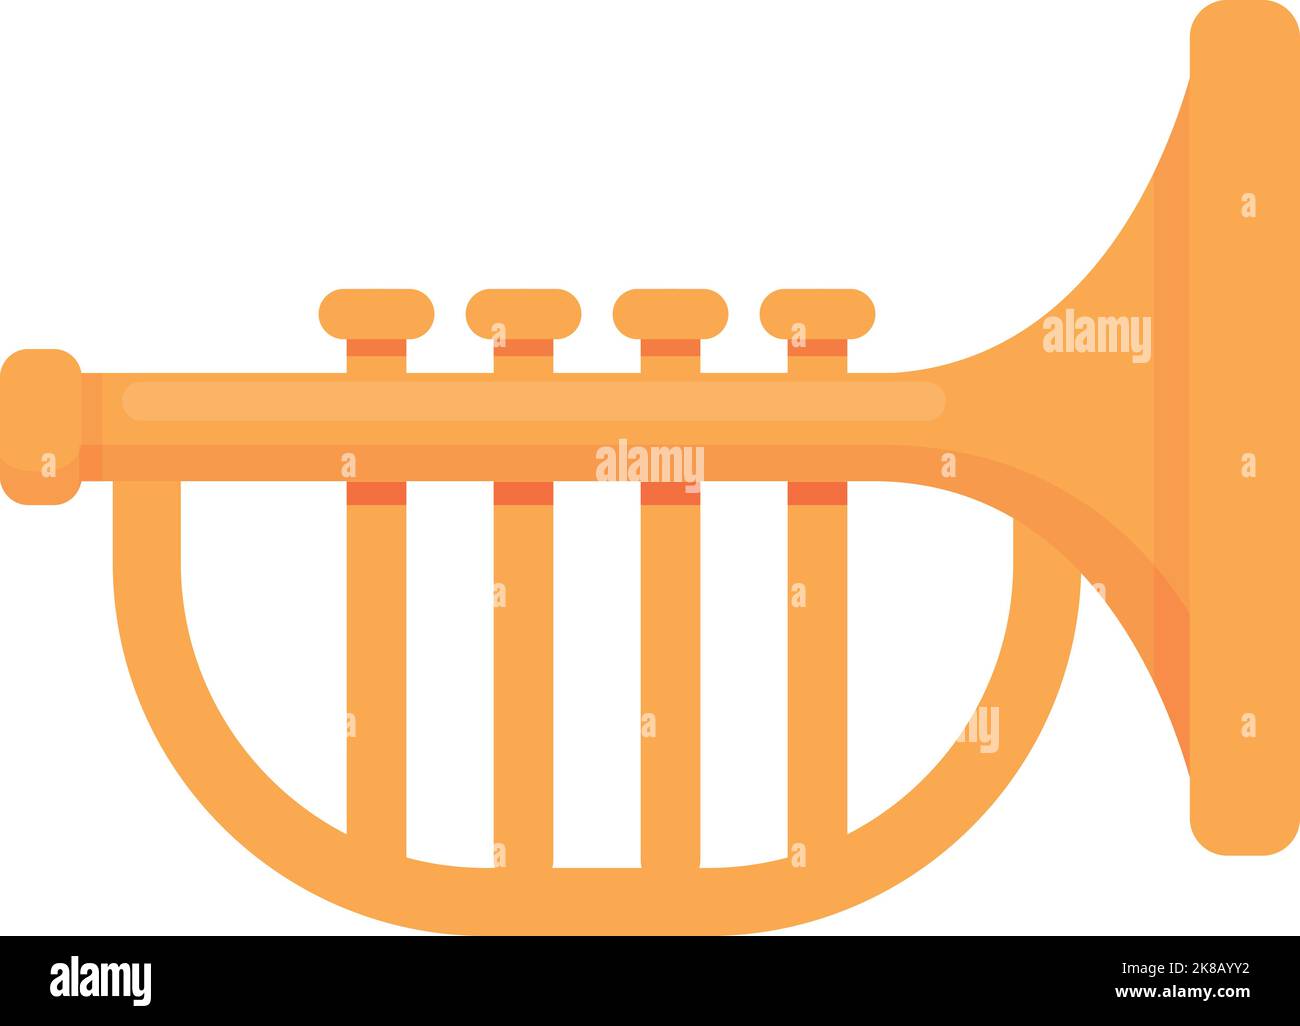 Trompeta para niños, cuerno de trompeta de plástico dorado con 4 teclas de  colores, trompeta para niños, instrumentos musicales de latón, juguete de